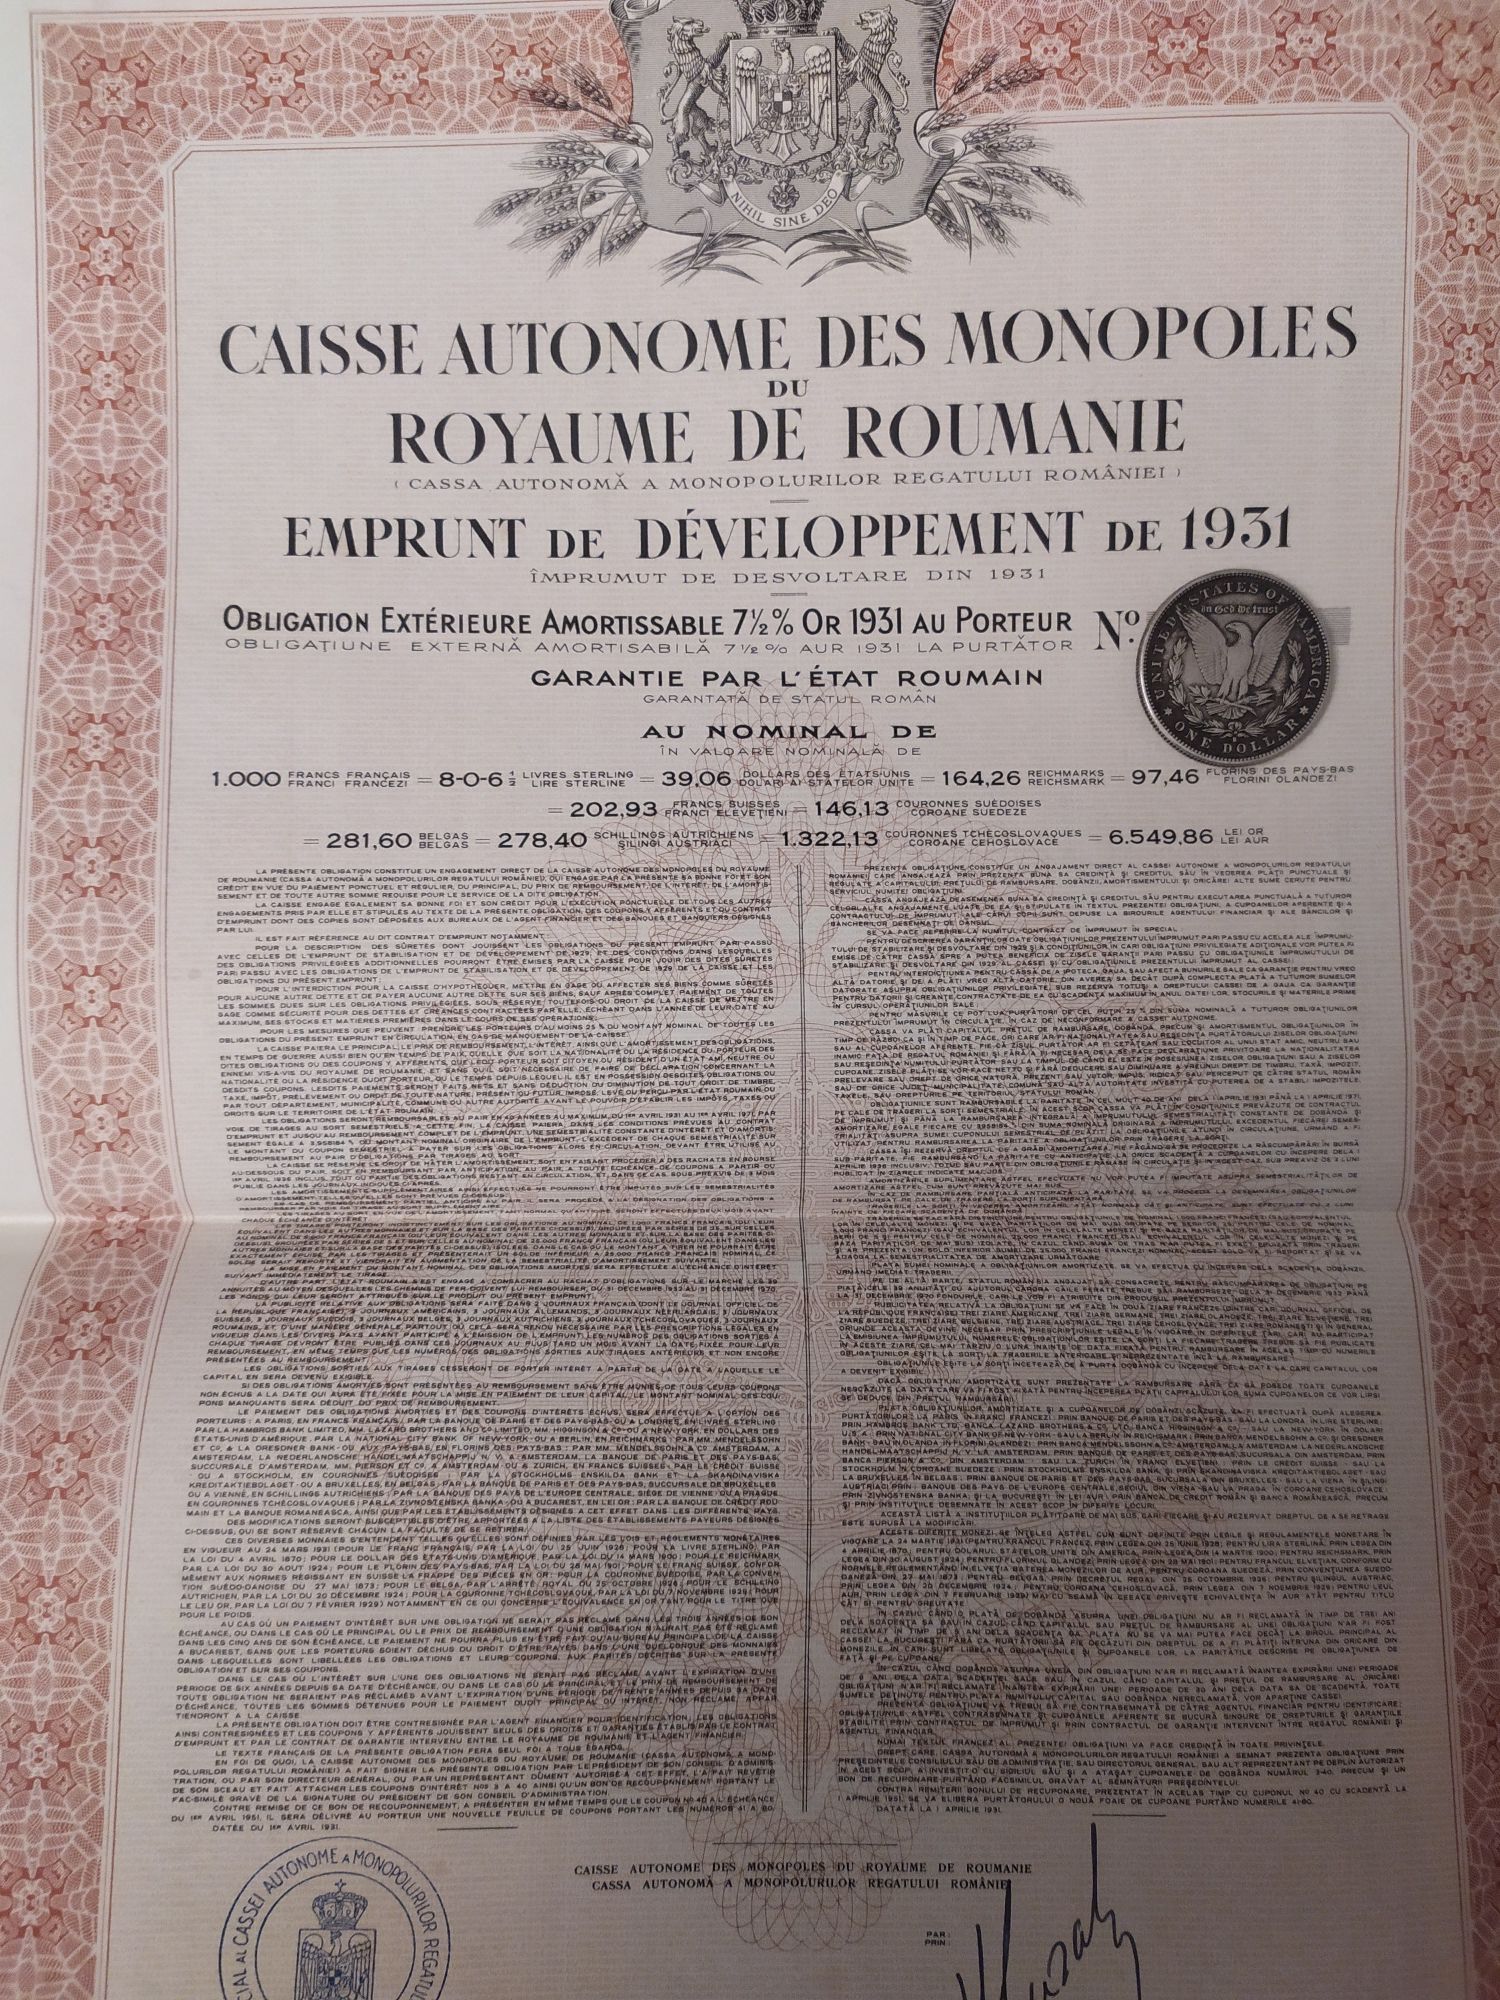 1000 Franci Aur 1931 Titlu de Stat obligatiuni neincasate cu cupoane